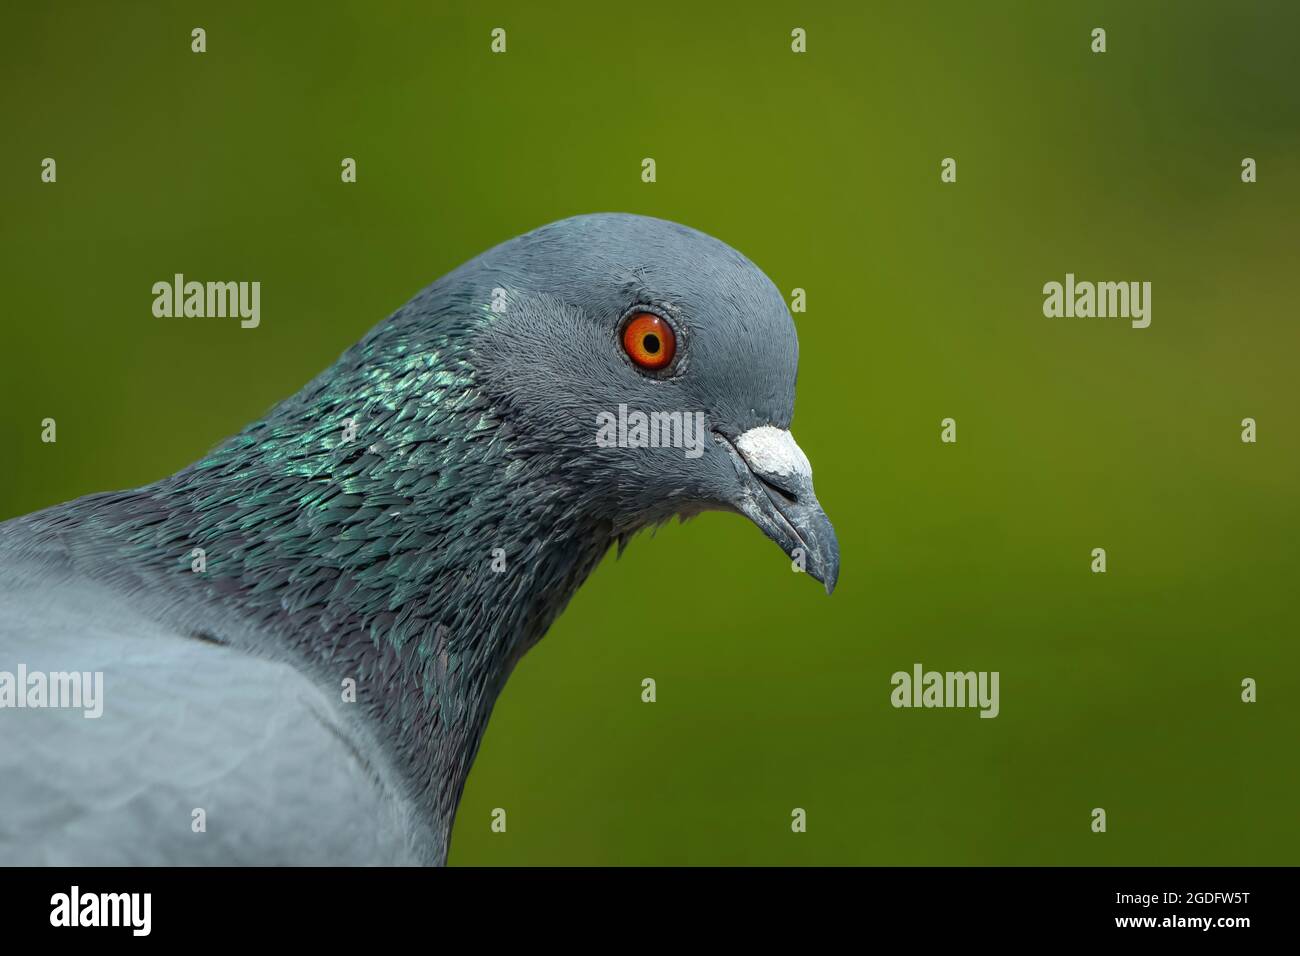 Pigeon indiano O Rock dove - la colomba di roccia, piccione di roccia, o piccione comune è un membro della famiglia degli uccelli Columbidae. Foto Stock